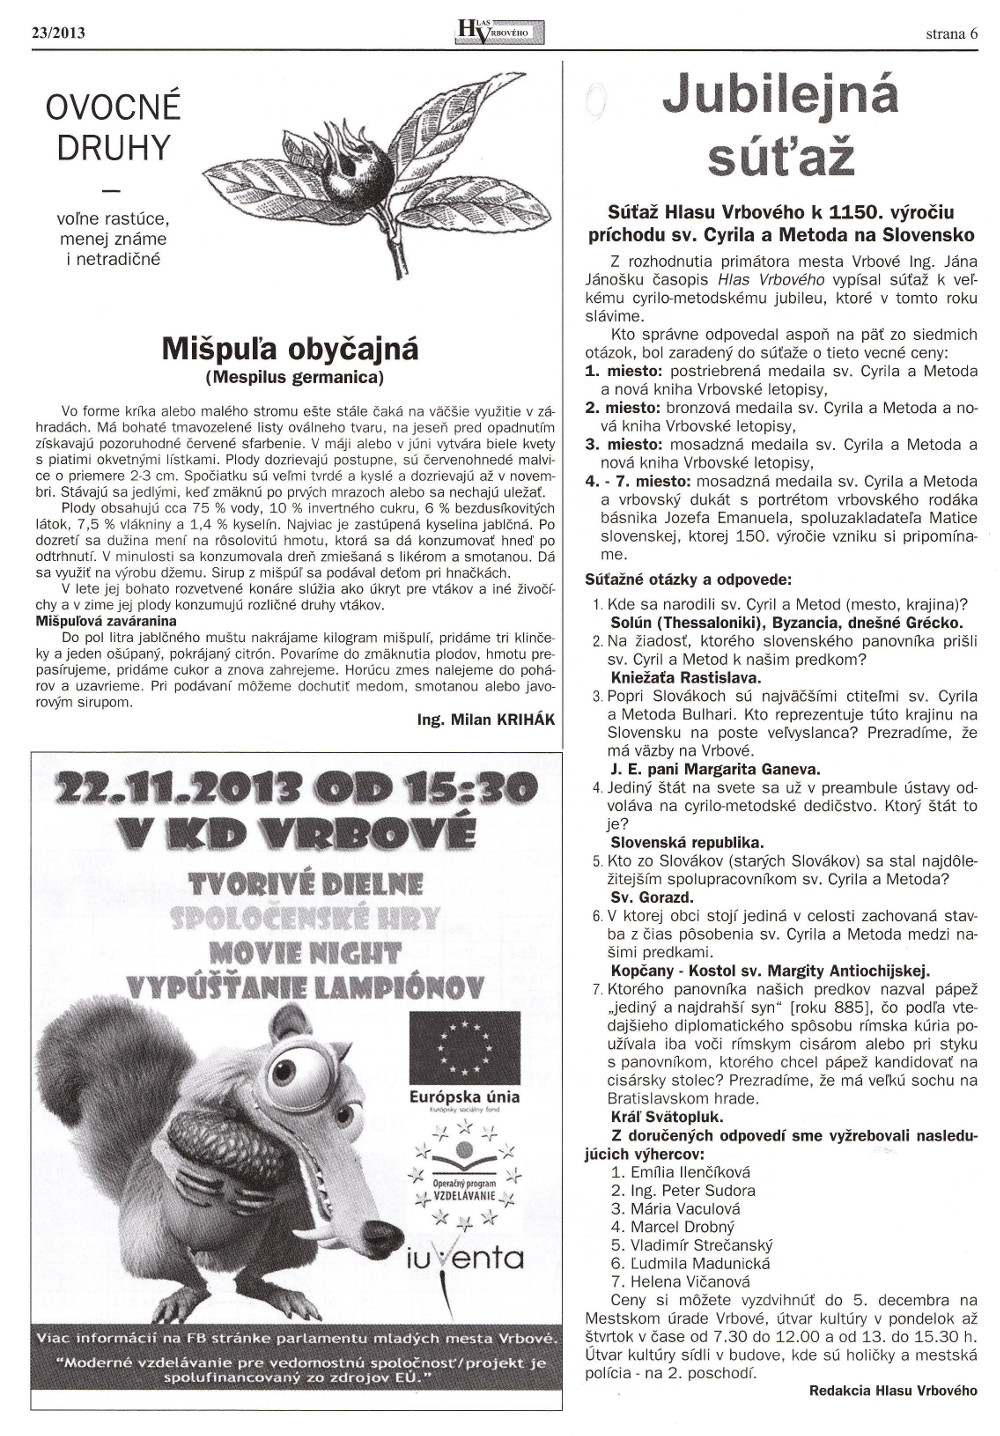 Hlas Vrbového 23/2013, strana 6